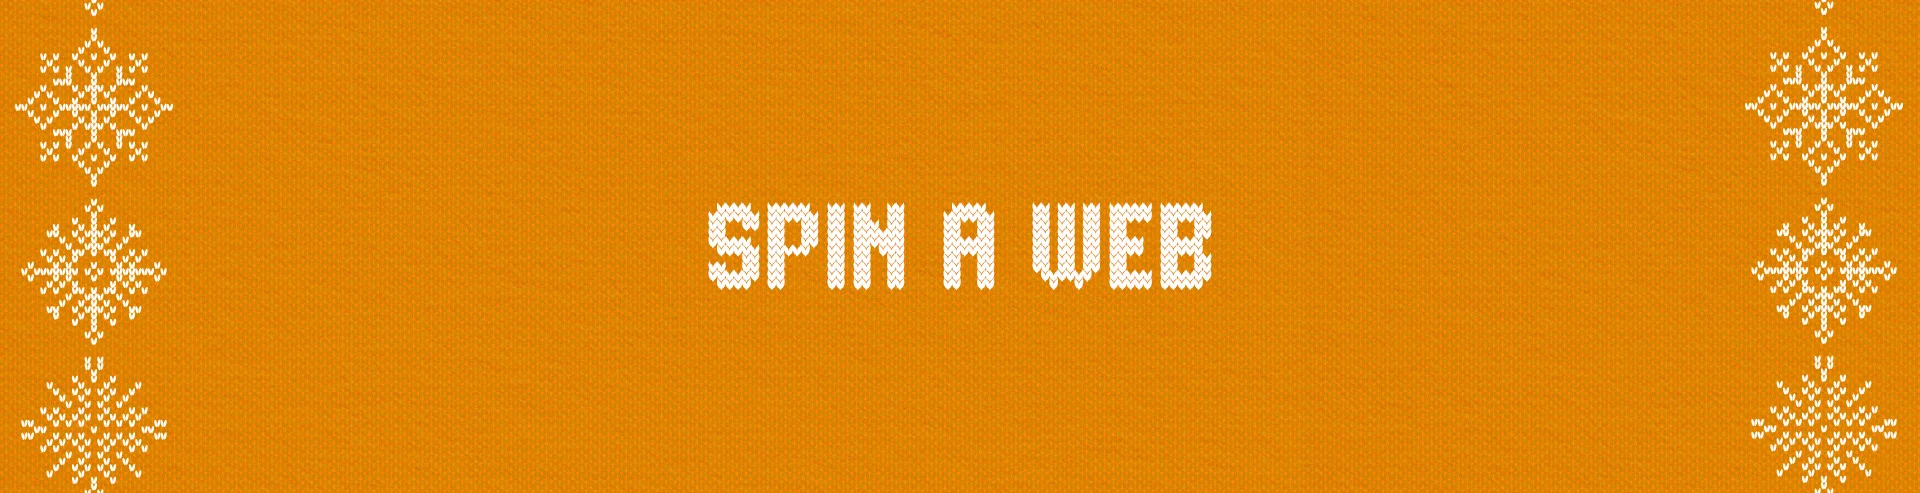 Full-Width-Large-Gift-Ideas-Festive-Spin-A-Web-Desktop.webp